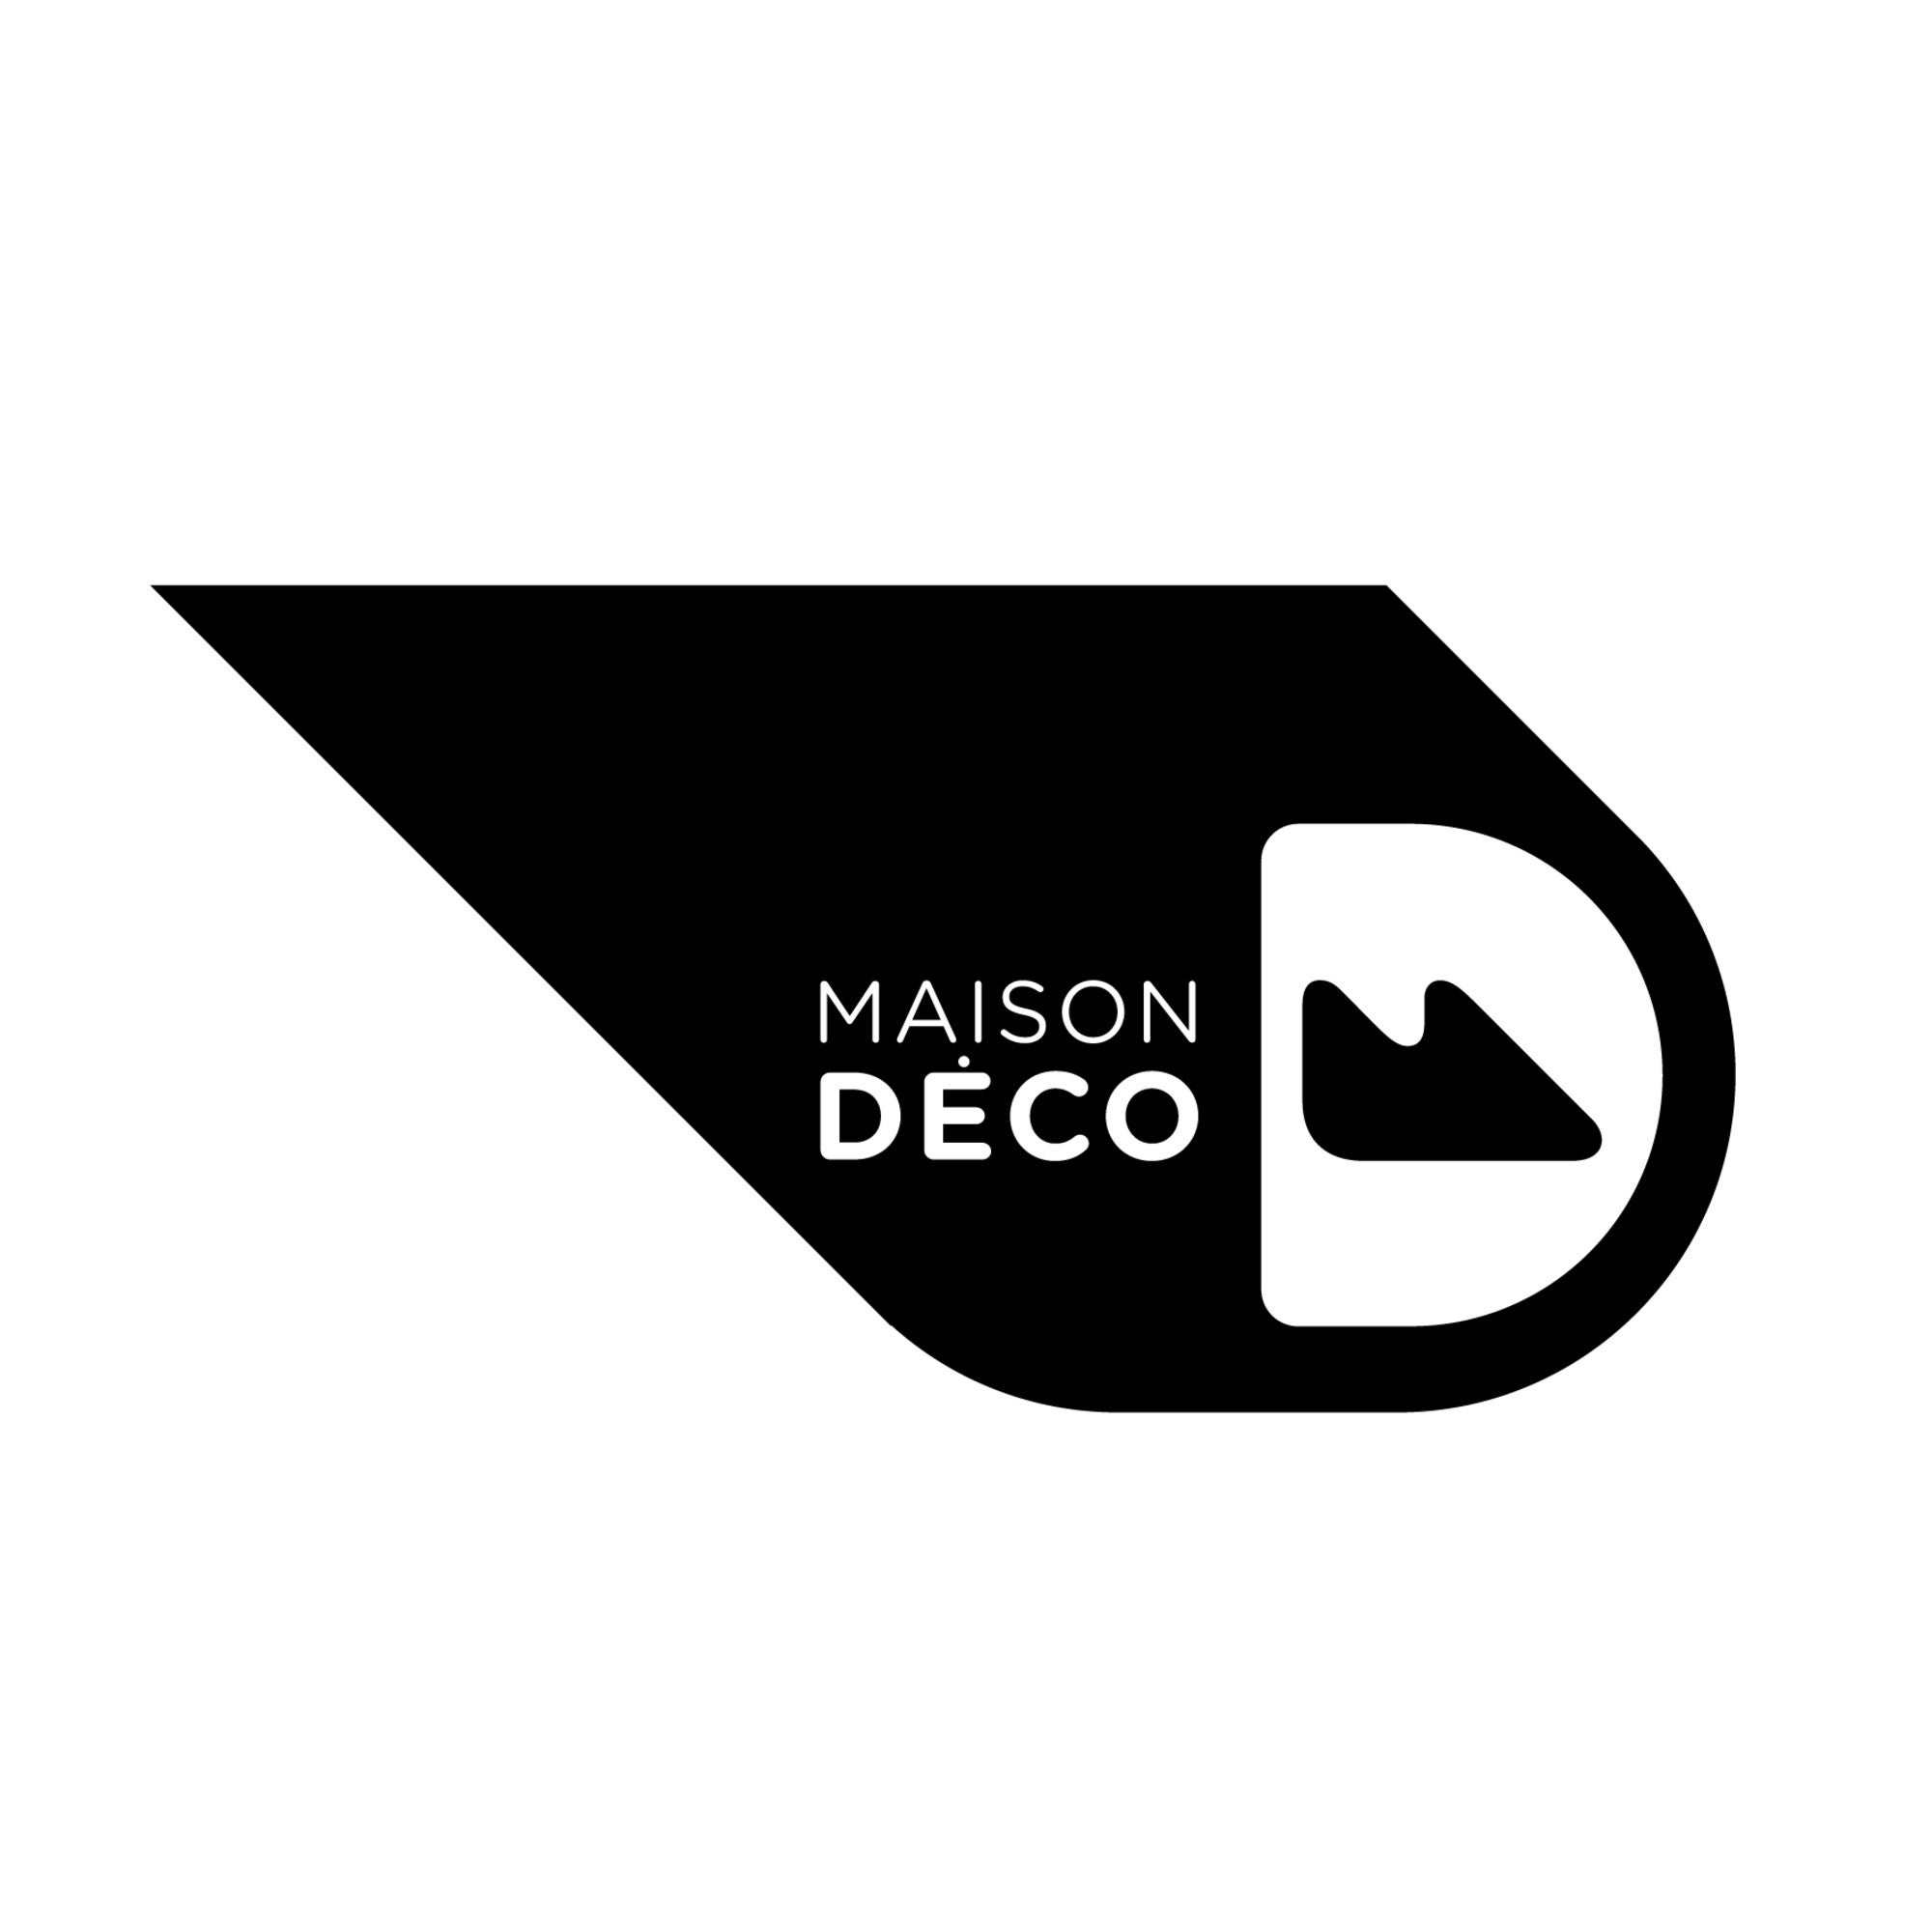 MAISON DECO